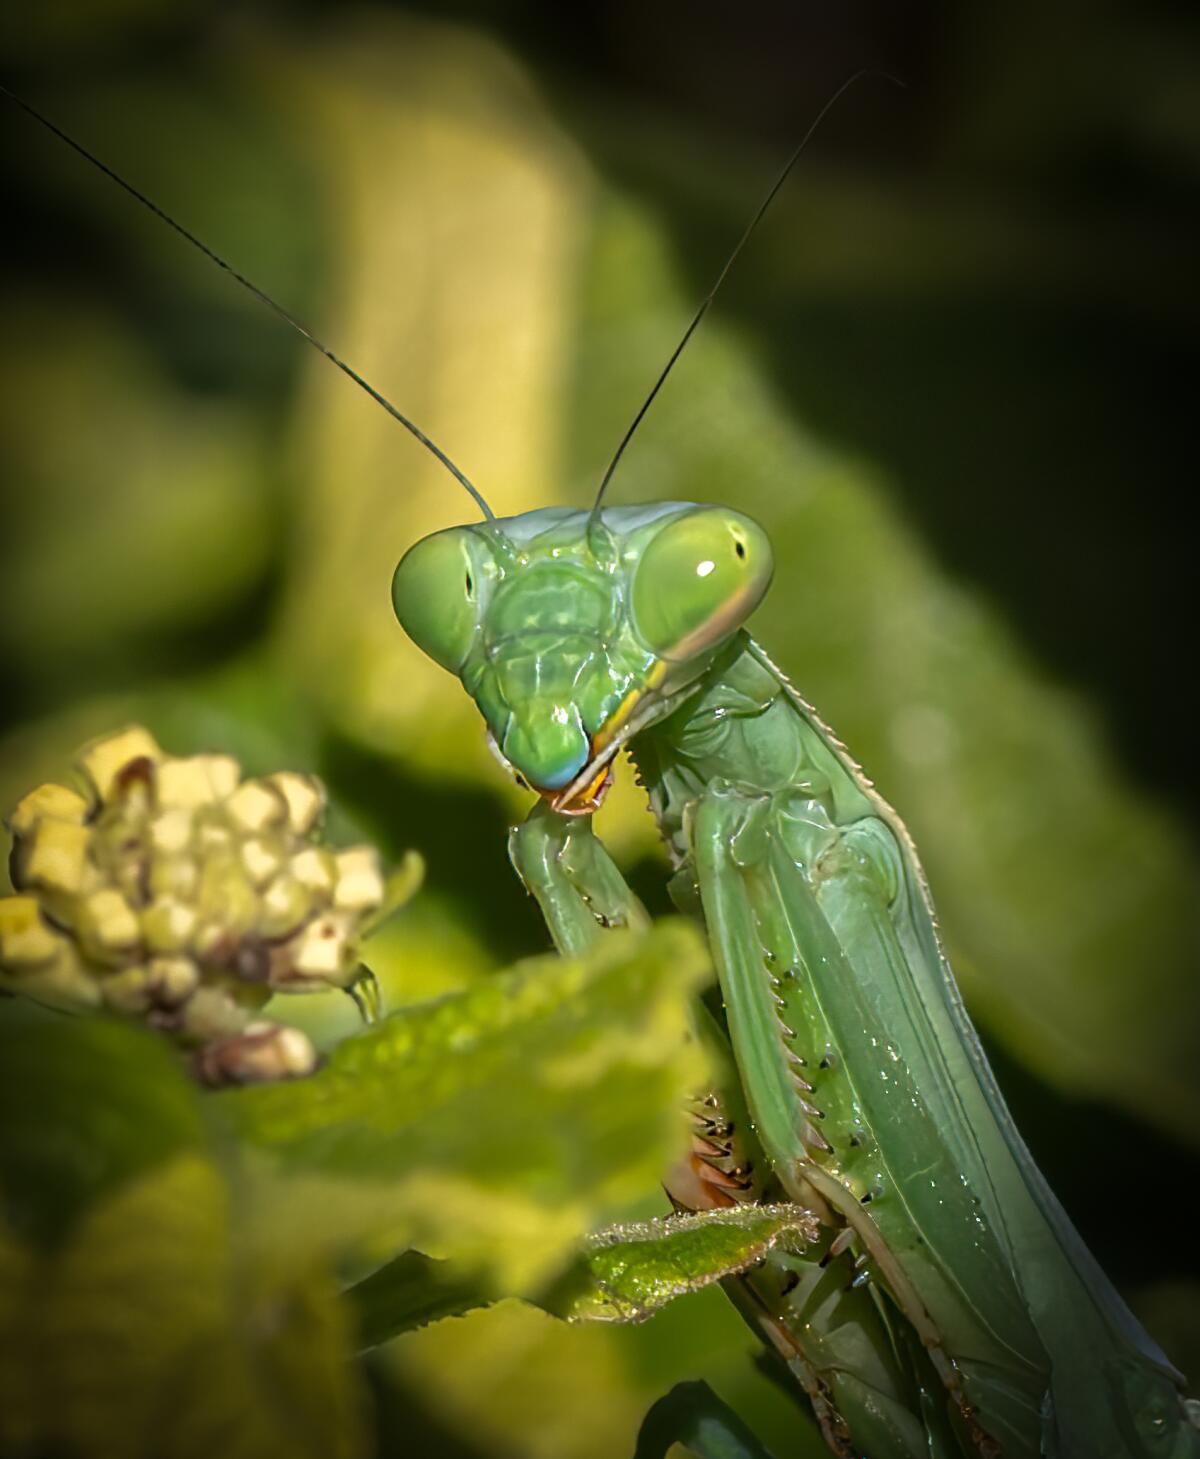 A praying mantis.